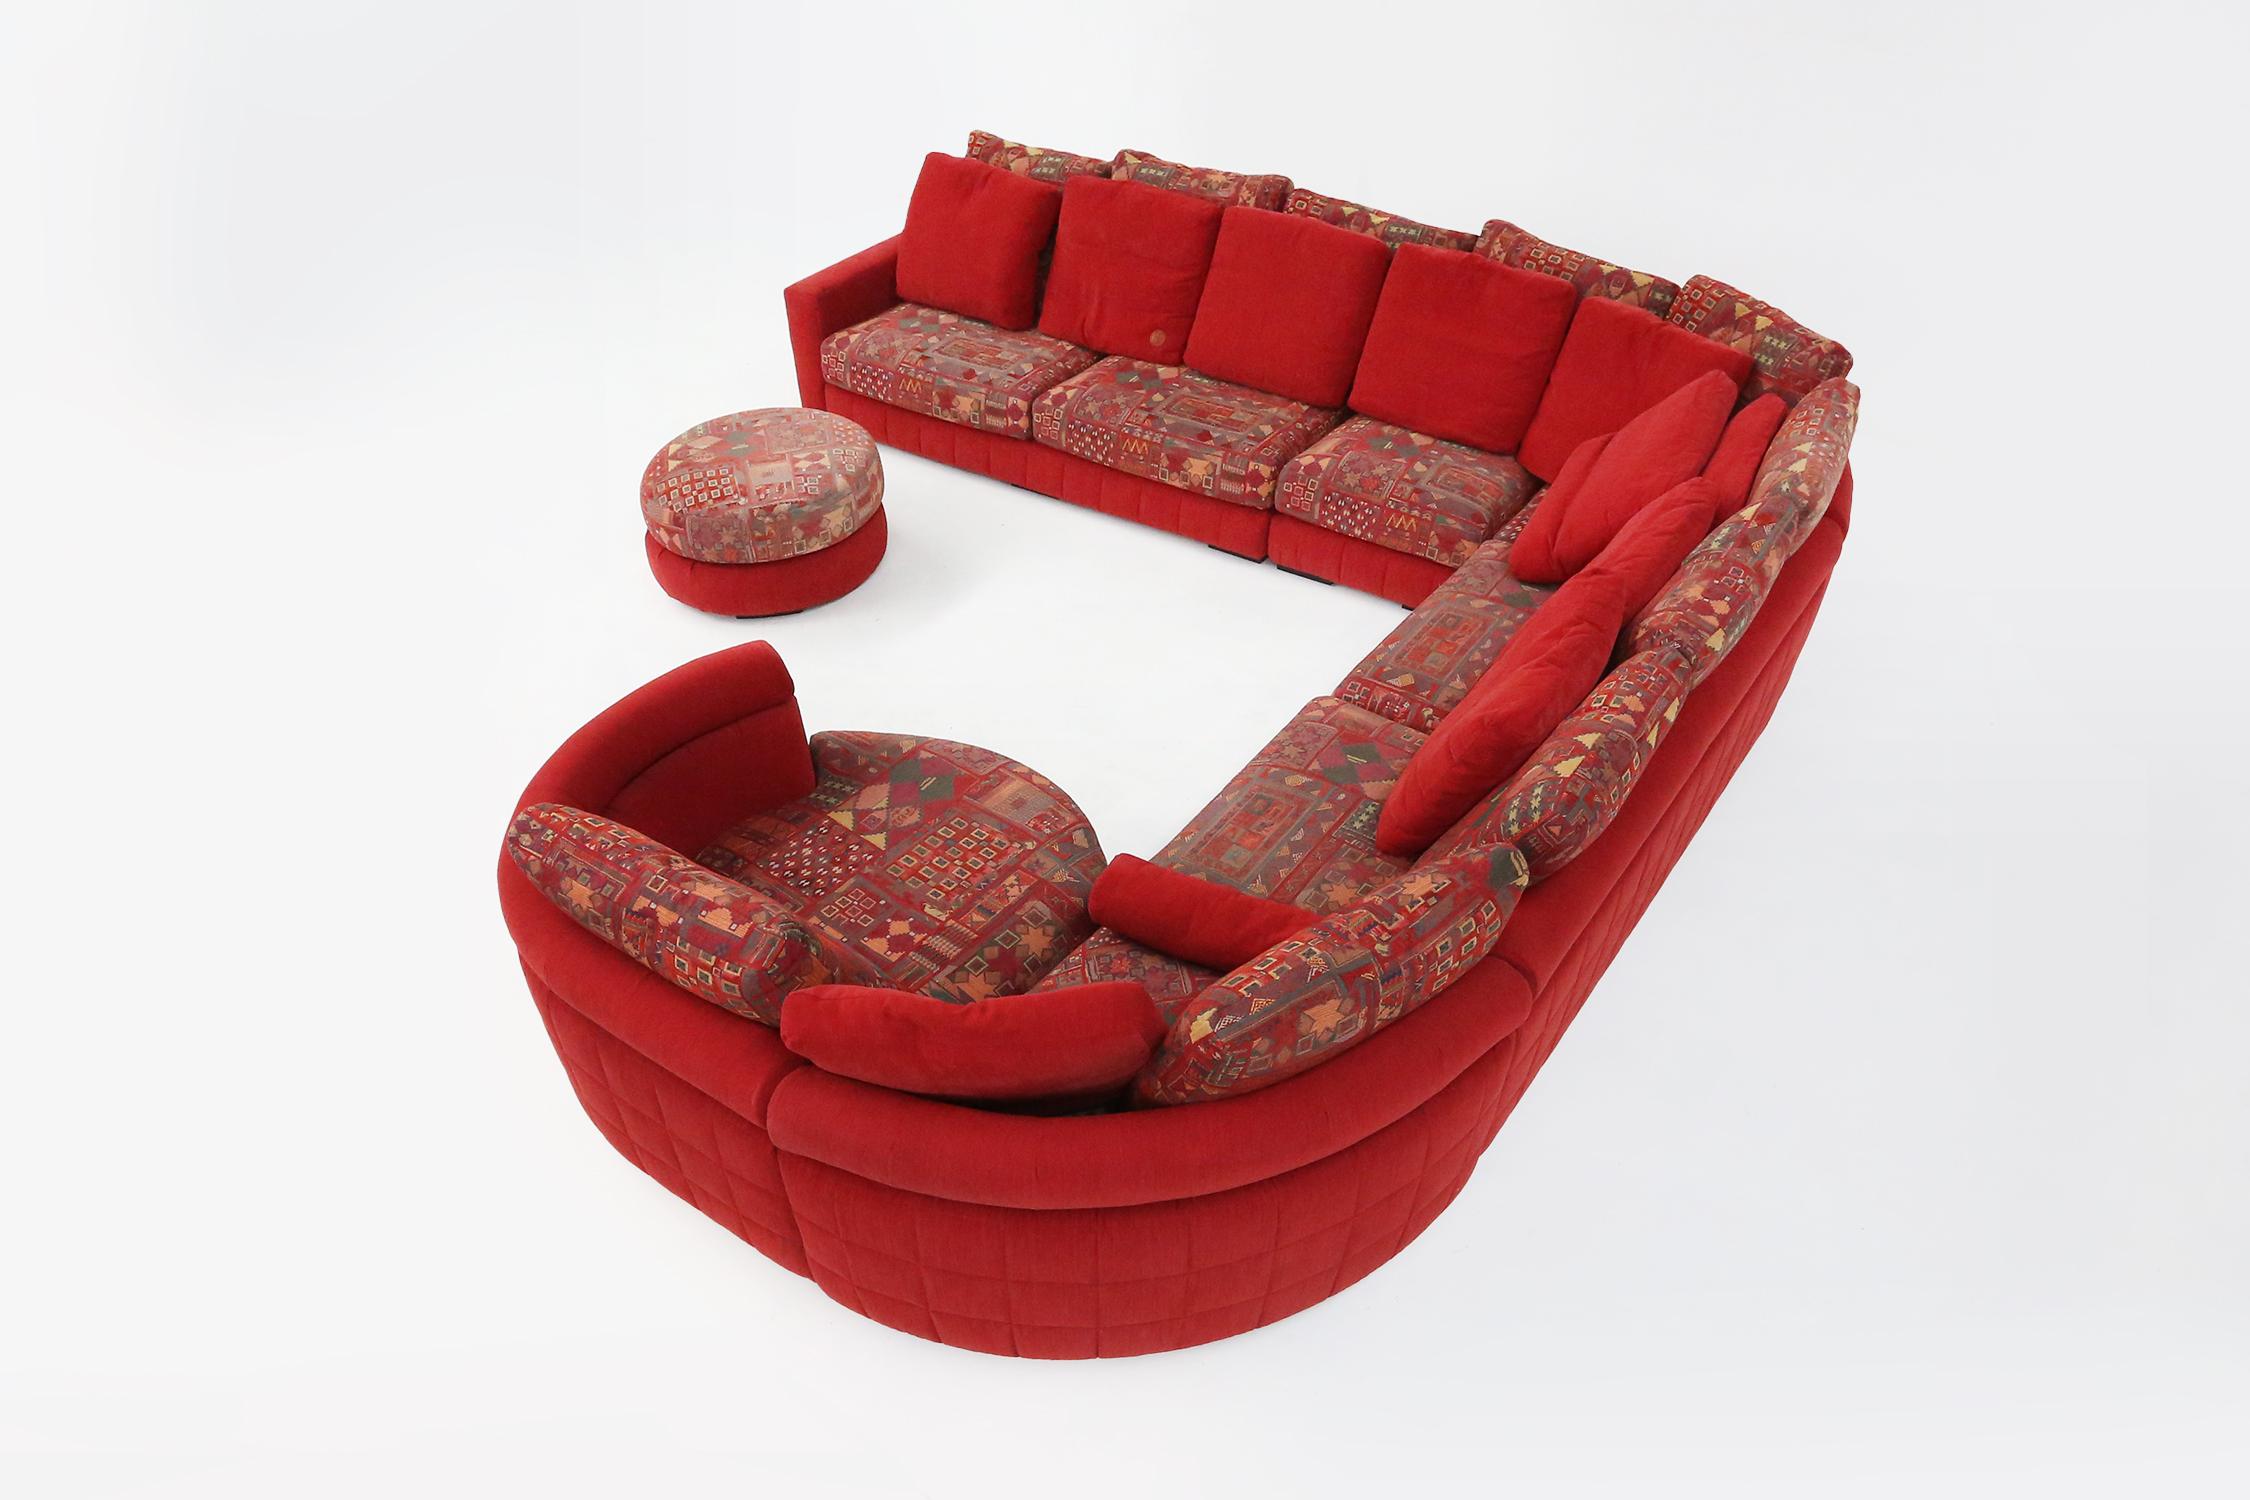 
Ce canapé modulable de Roche Bobois est fabriqué à partir de matériaux de haute qualité et présente un élégant revêtement rouge qui égayera n'importe quelle pièce.

Vous pouvez personnaliser le siège à votre guise, grâce aux différentes zones